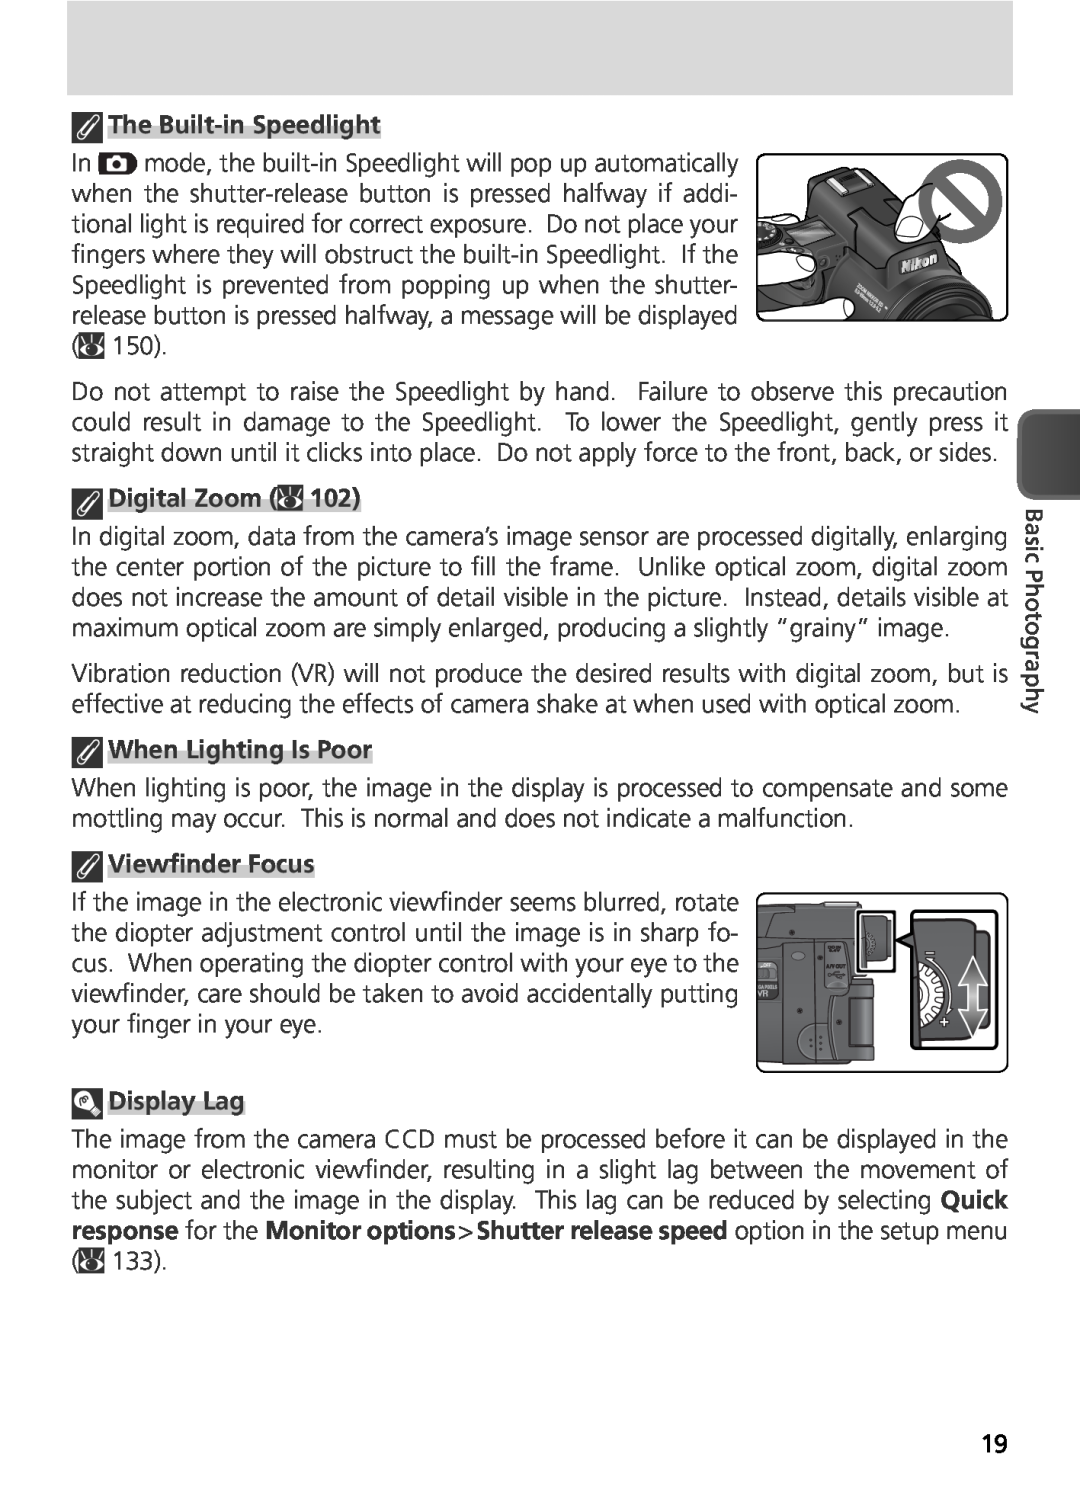 Nikon COOLPIX8800 manual The Built-in Speedlight, Digital Zoom, When Lighting Is Poor, Viewﬁnder Focus, Display Lag 